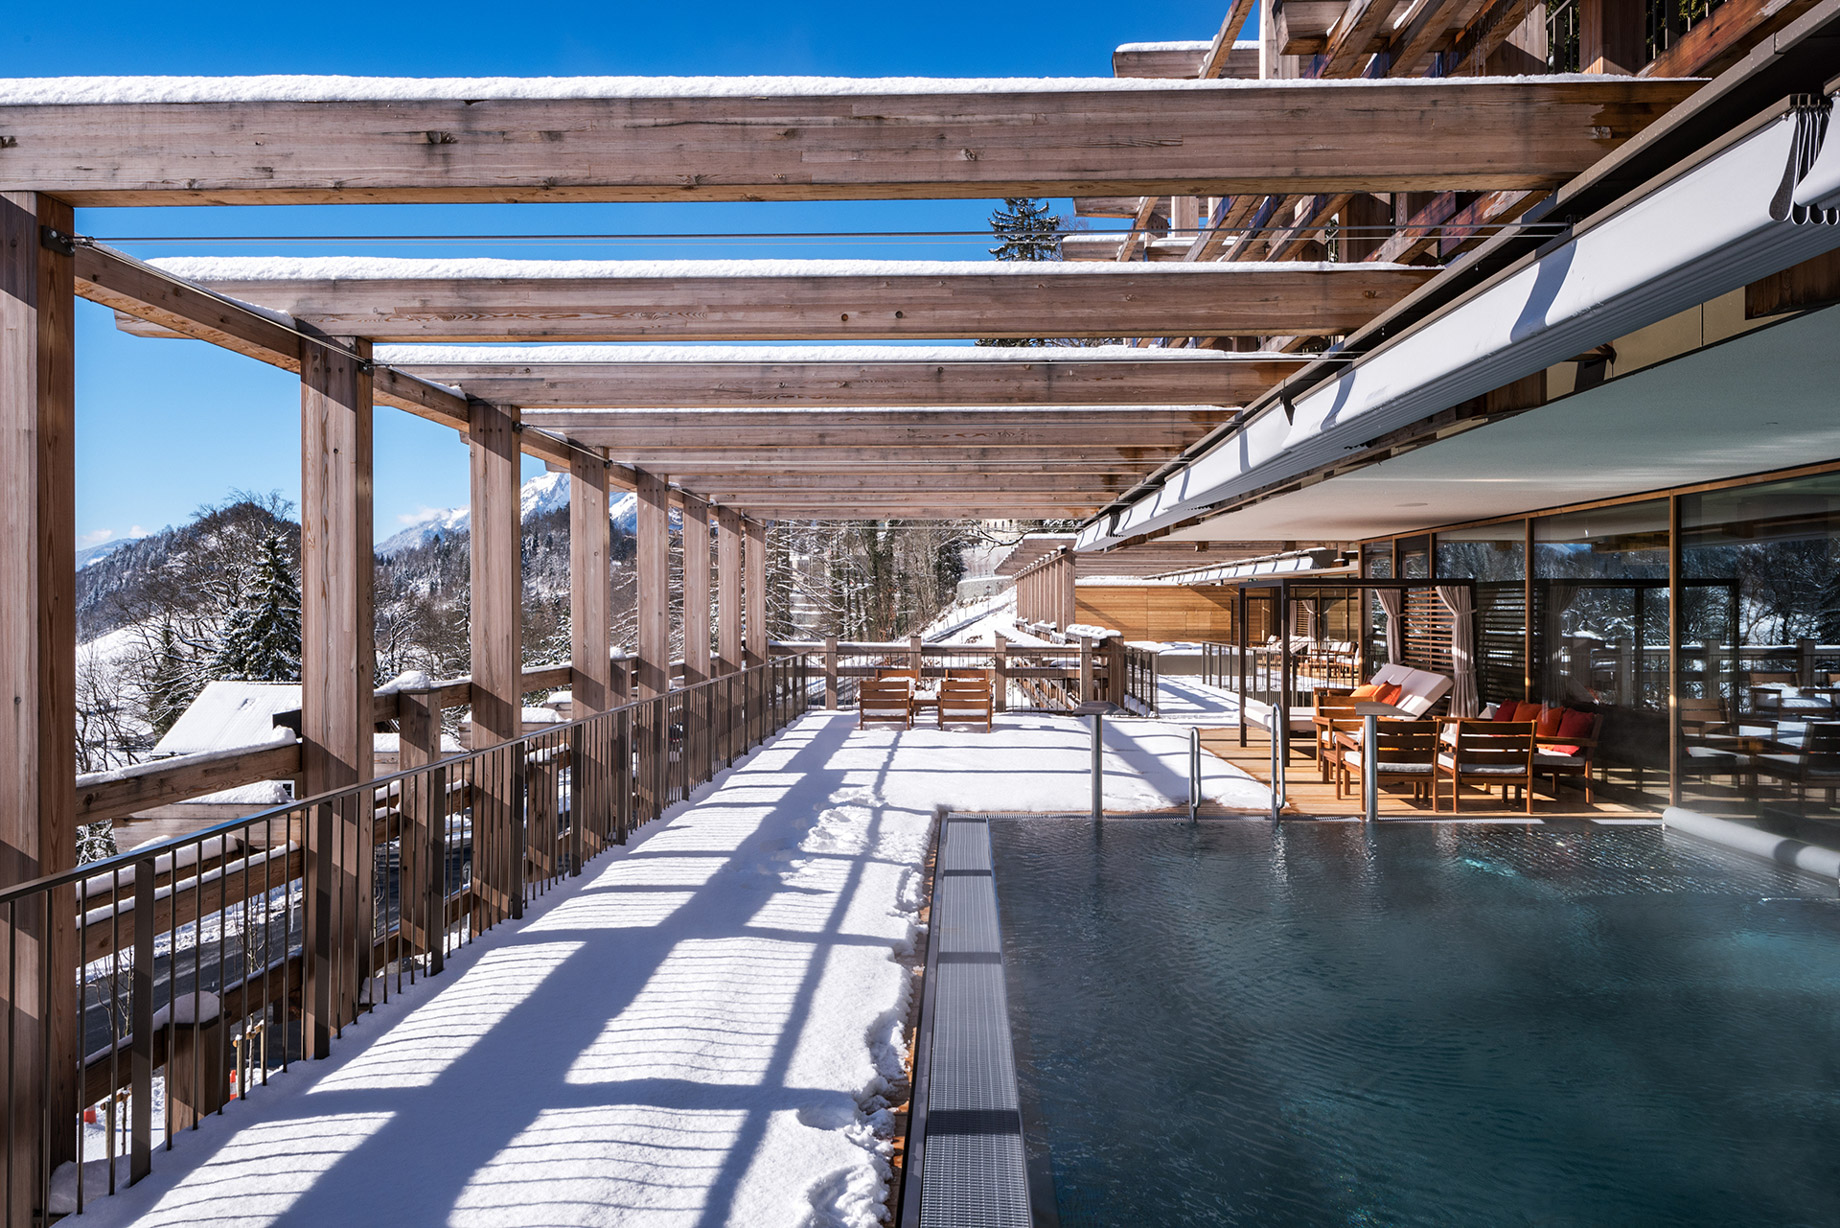 Waldhotel - Burgenstock Hotels & Resort - Obburgen, Switzerland - Outdoor Pool Deck Winter View